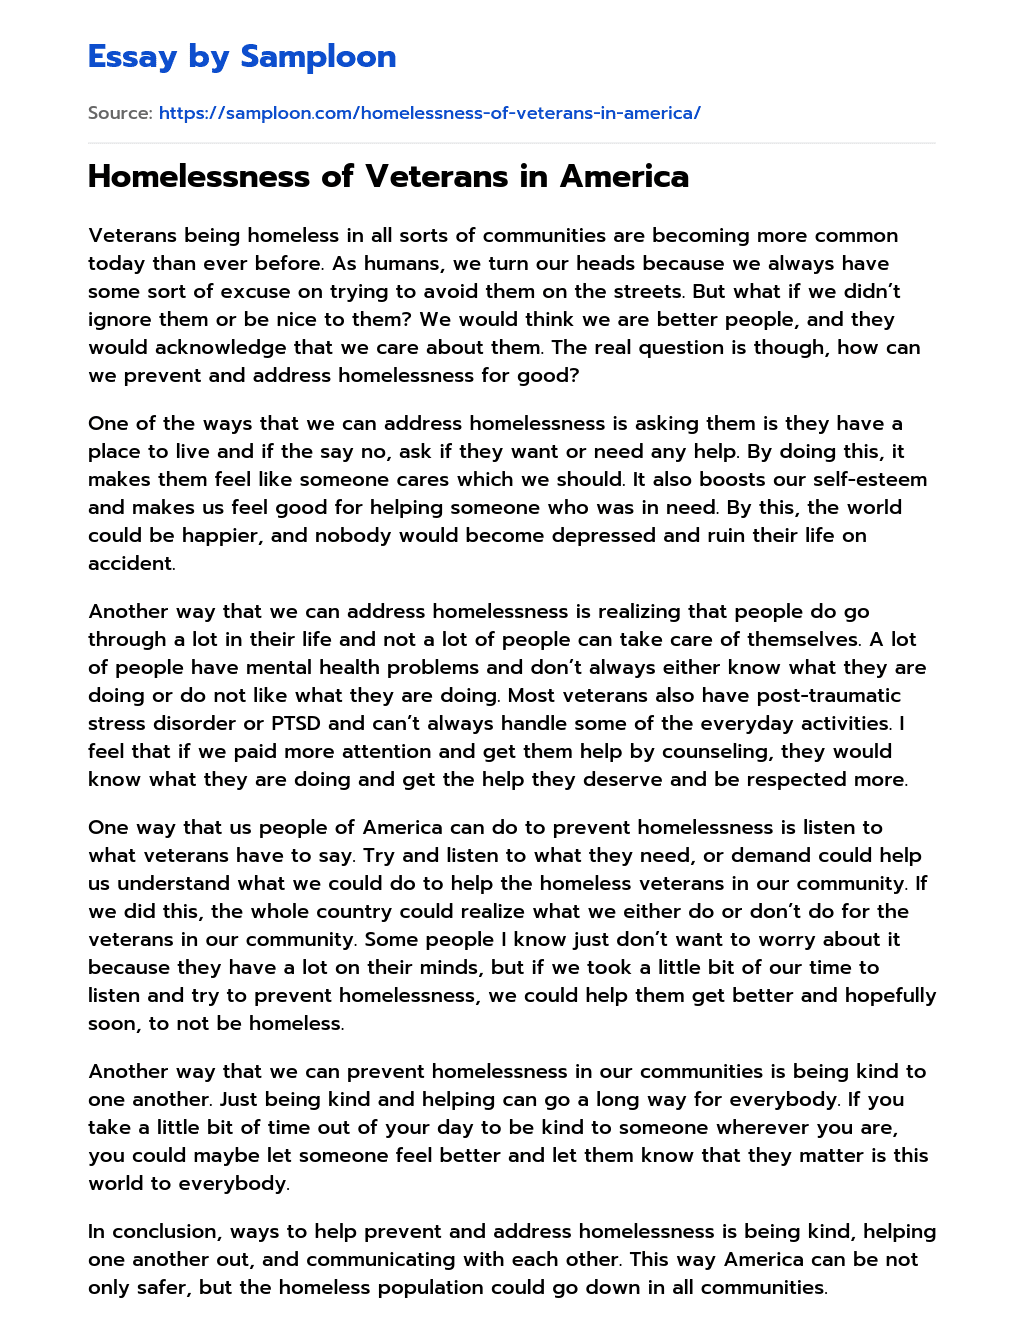 Homelessness of Veterans in America essay